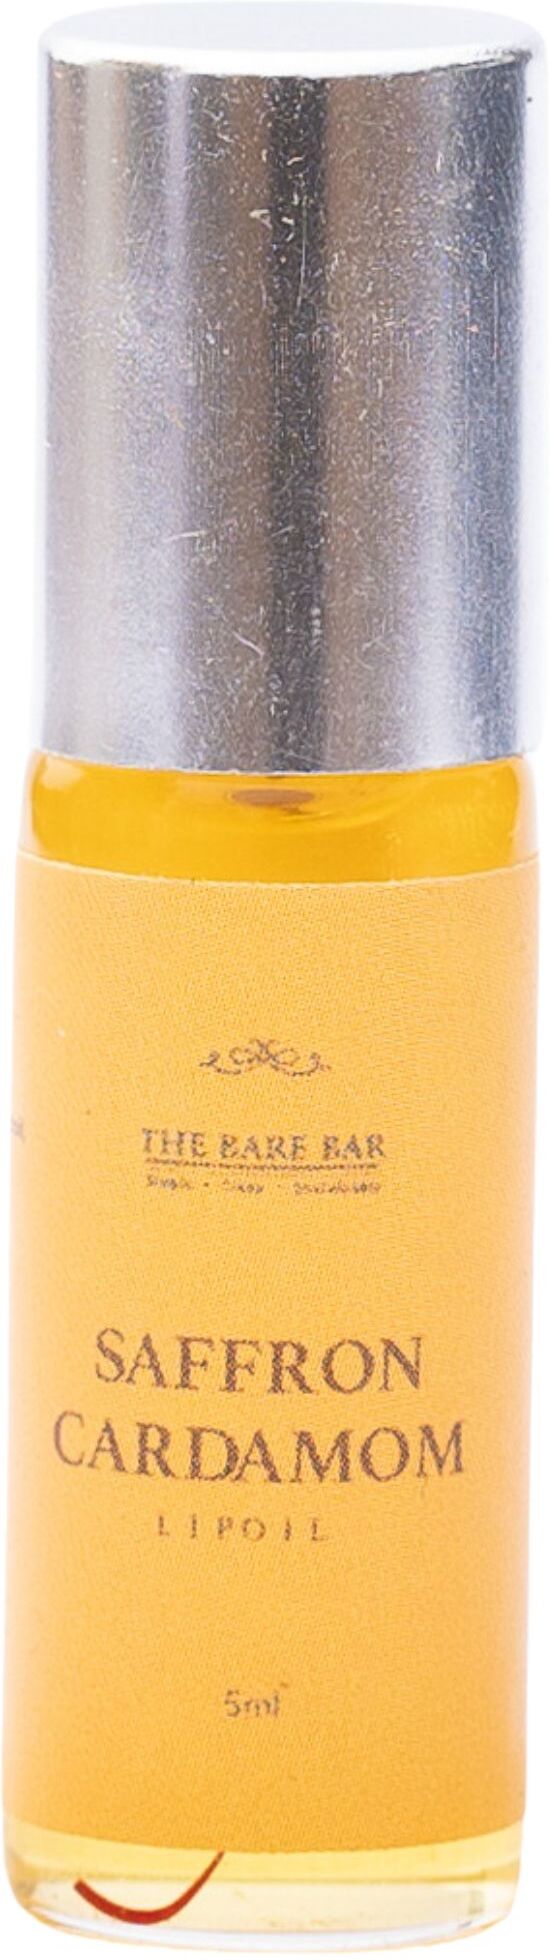 The Bare Bar Lip Oil Saffron